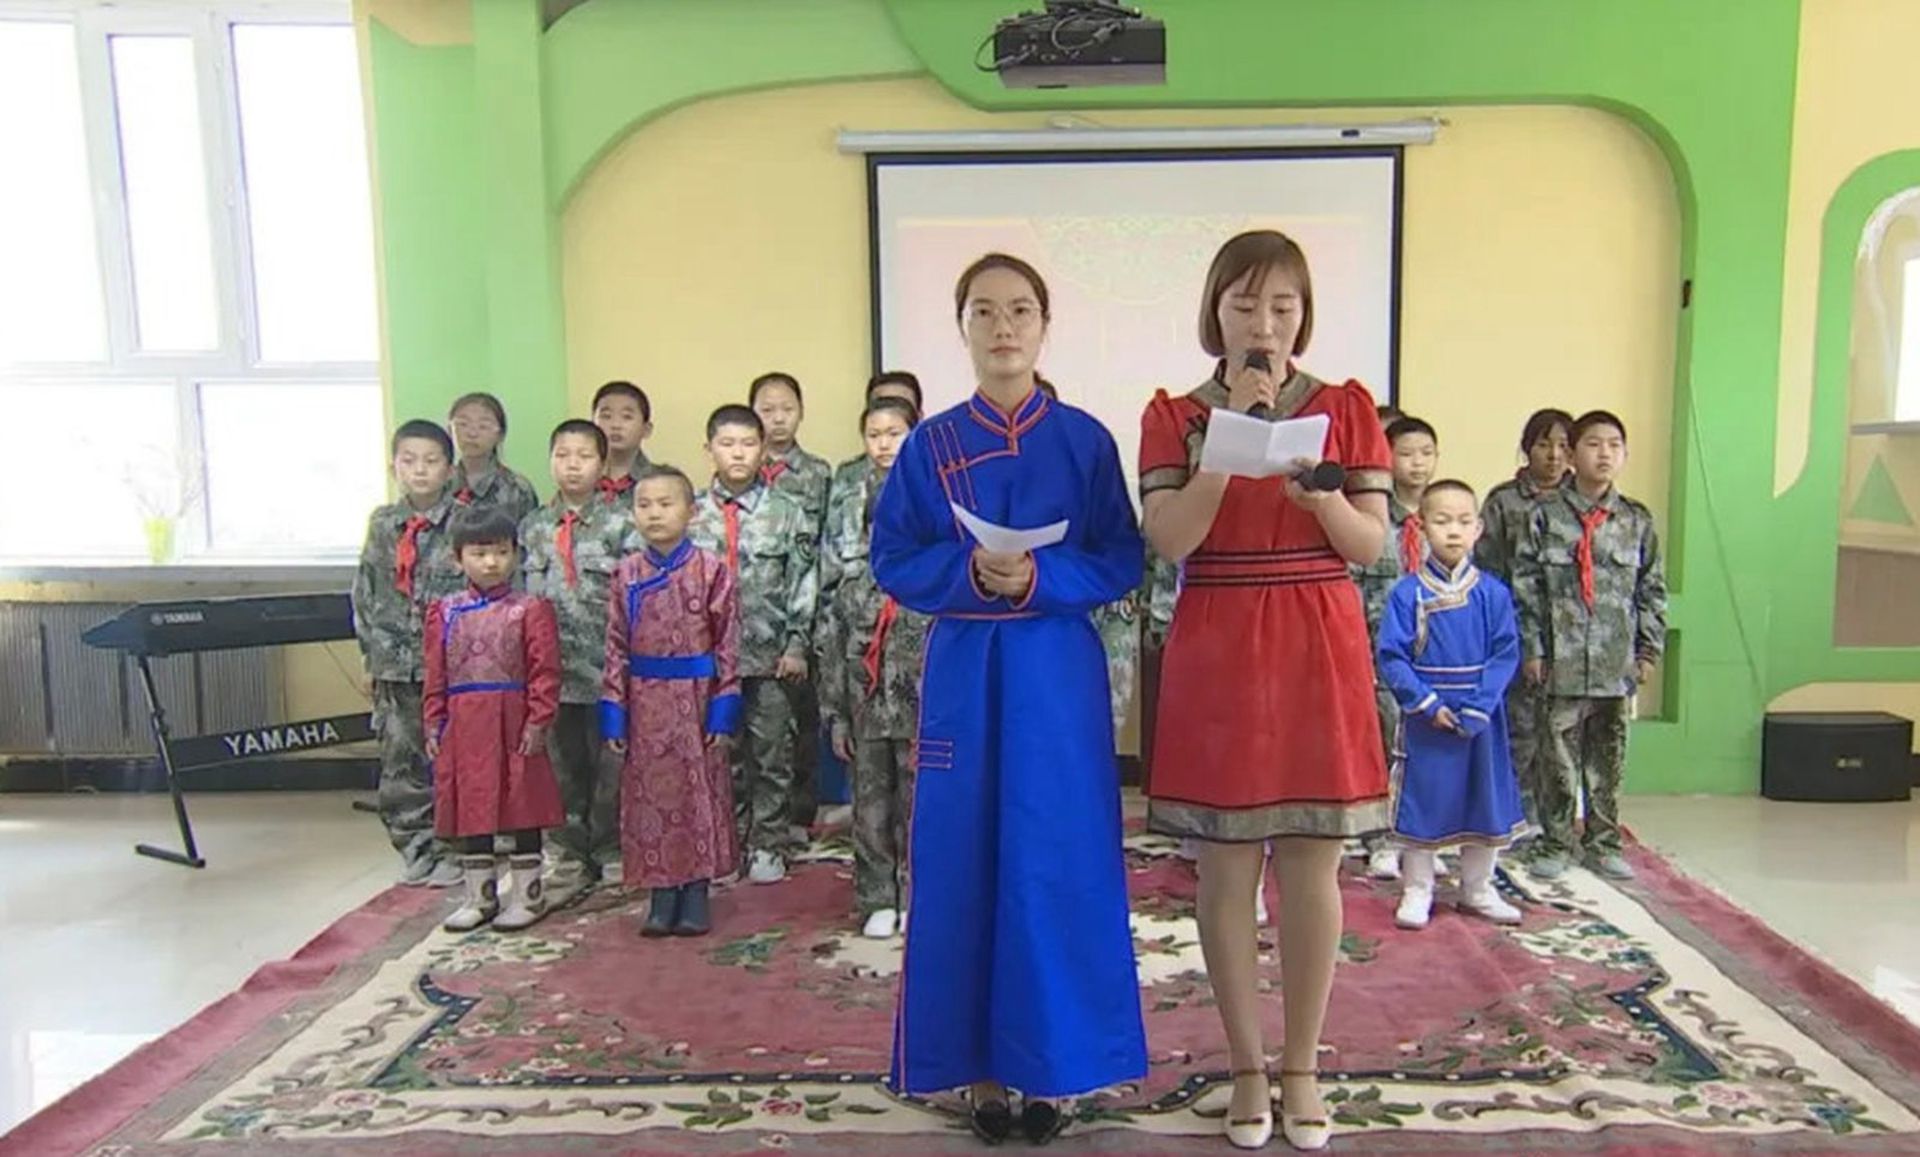 内蒙古对蒙语教学存在多项财政支持政策。（微博@呼伦贝尔额尔古纳）